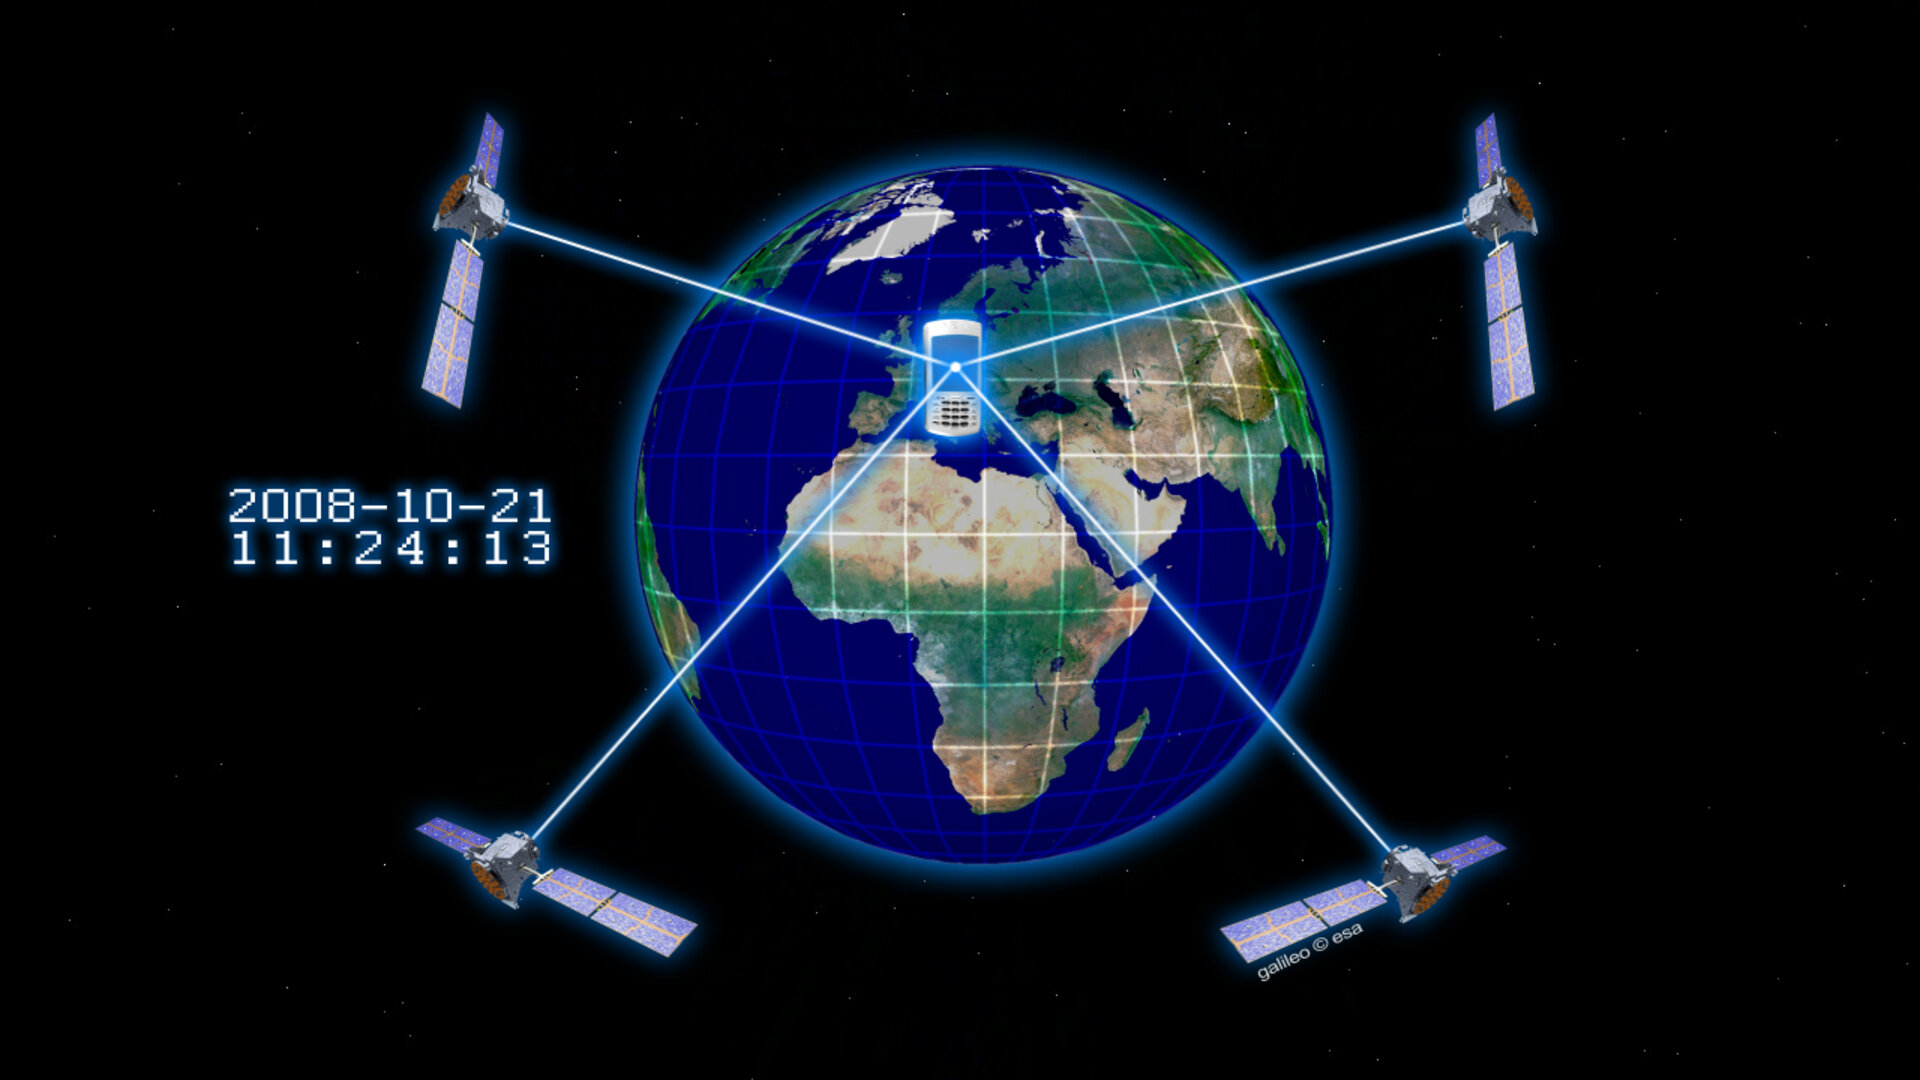 IPAYMO integriert Satellitendaten zur Unterstützung von sicheren Zahlungen